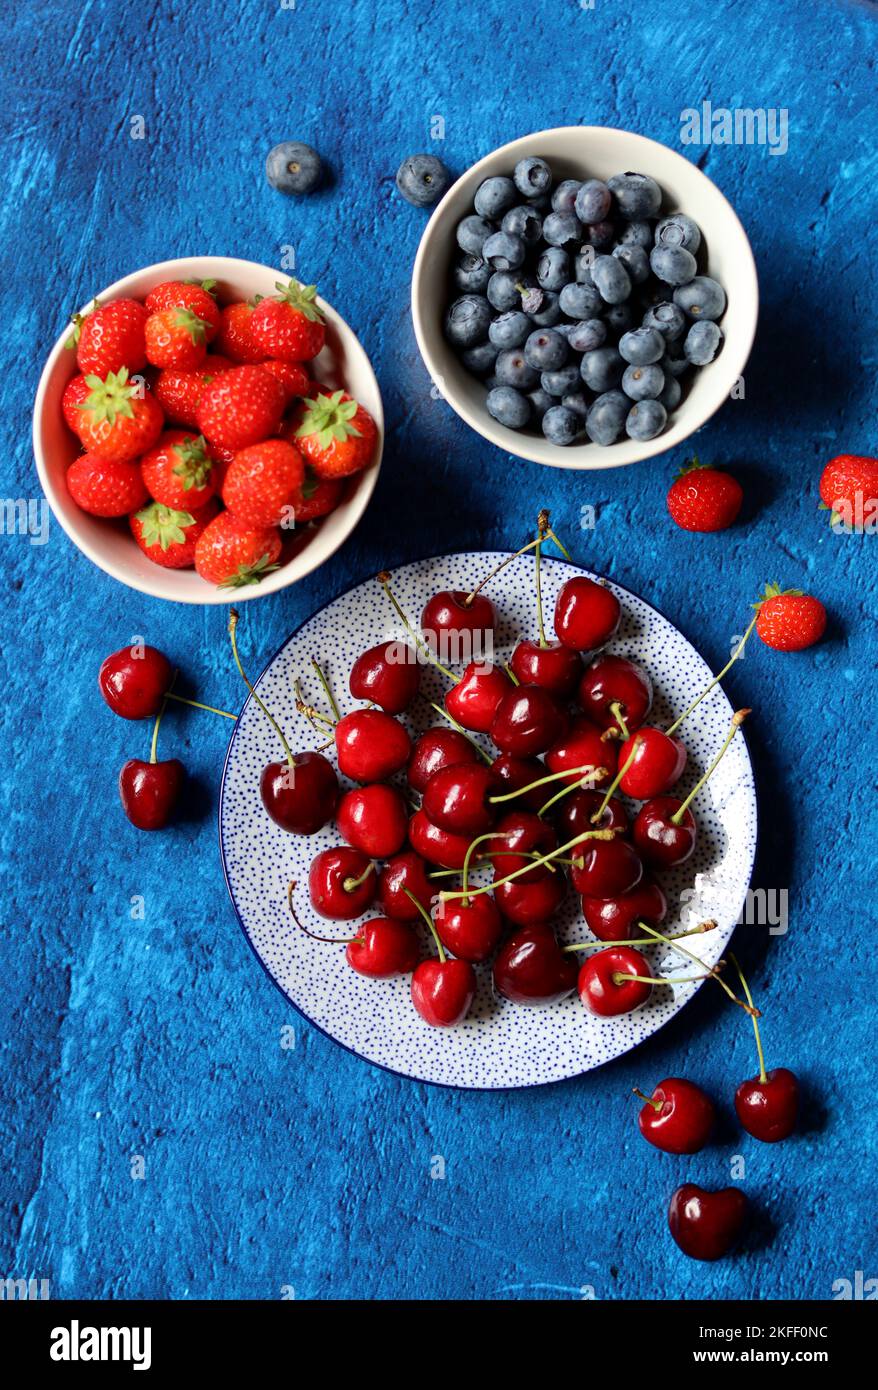 Sommerstille mit frischen Beeren auf Keramikplatten. Foto von oben mit Bio-Kirsche, Heidelbeere und Erdbeere. Konzept der gesunden Ernährung. Stockfoto